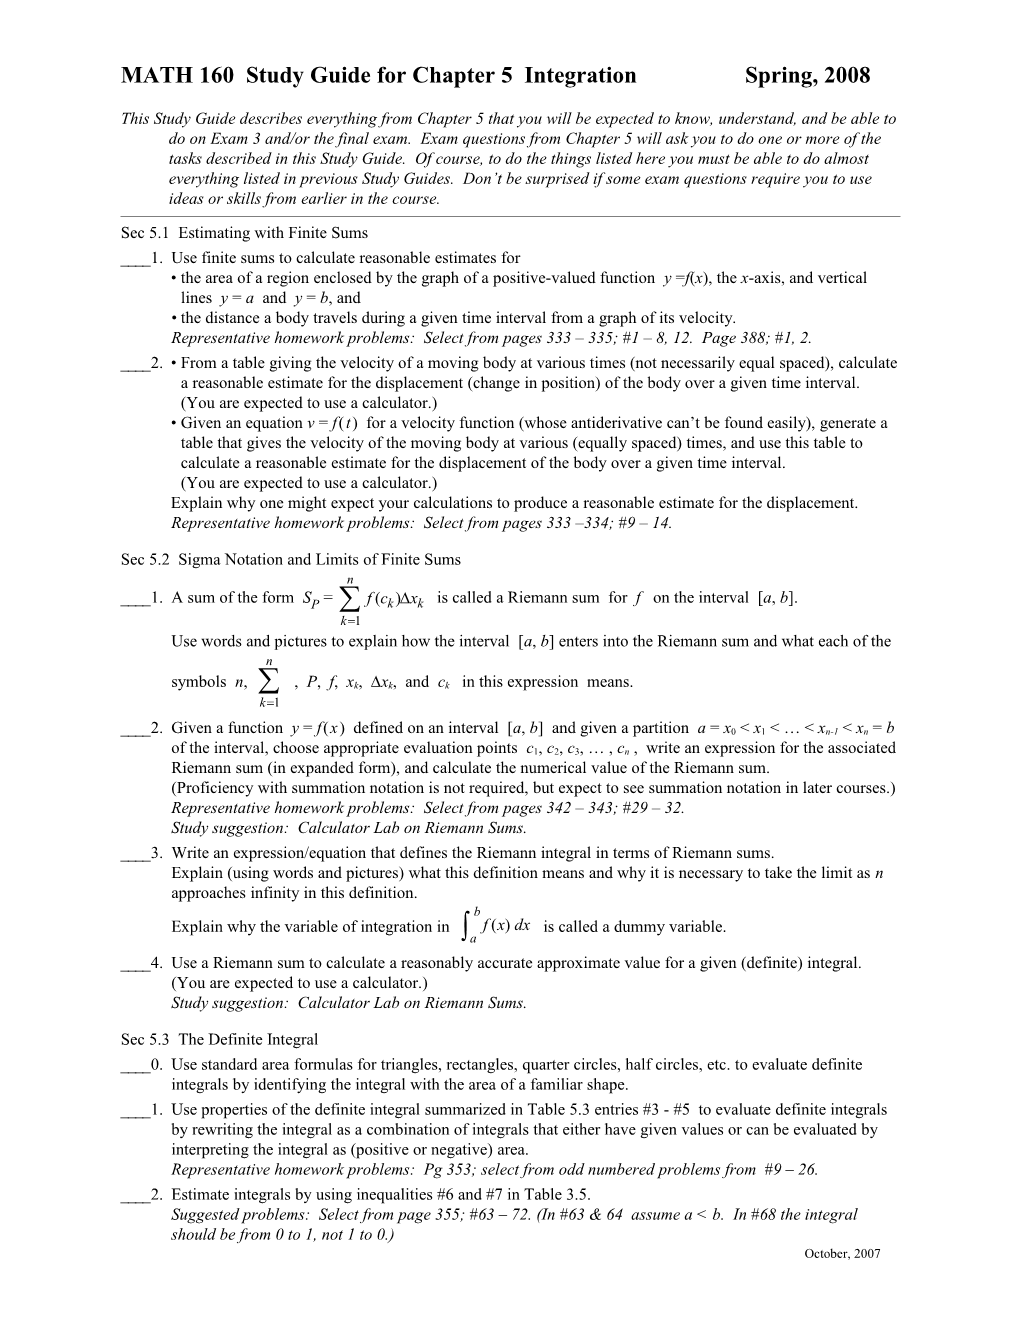 M160 Exam 3 Study Guide